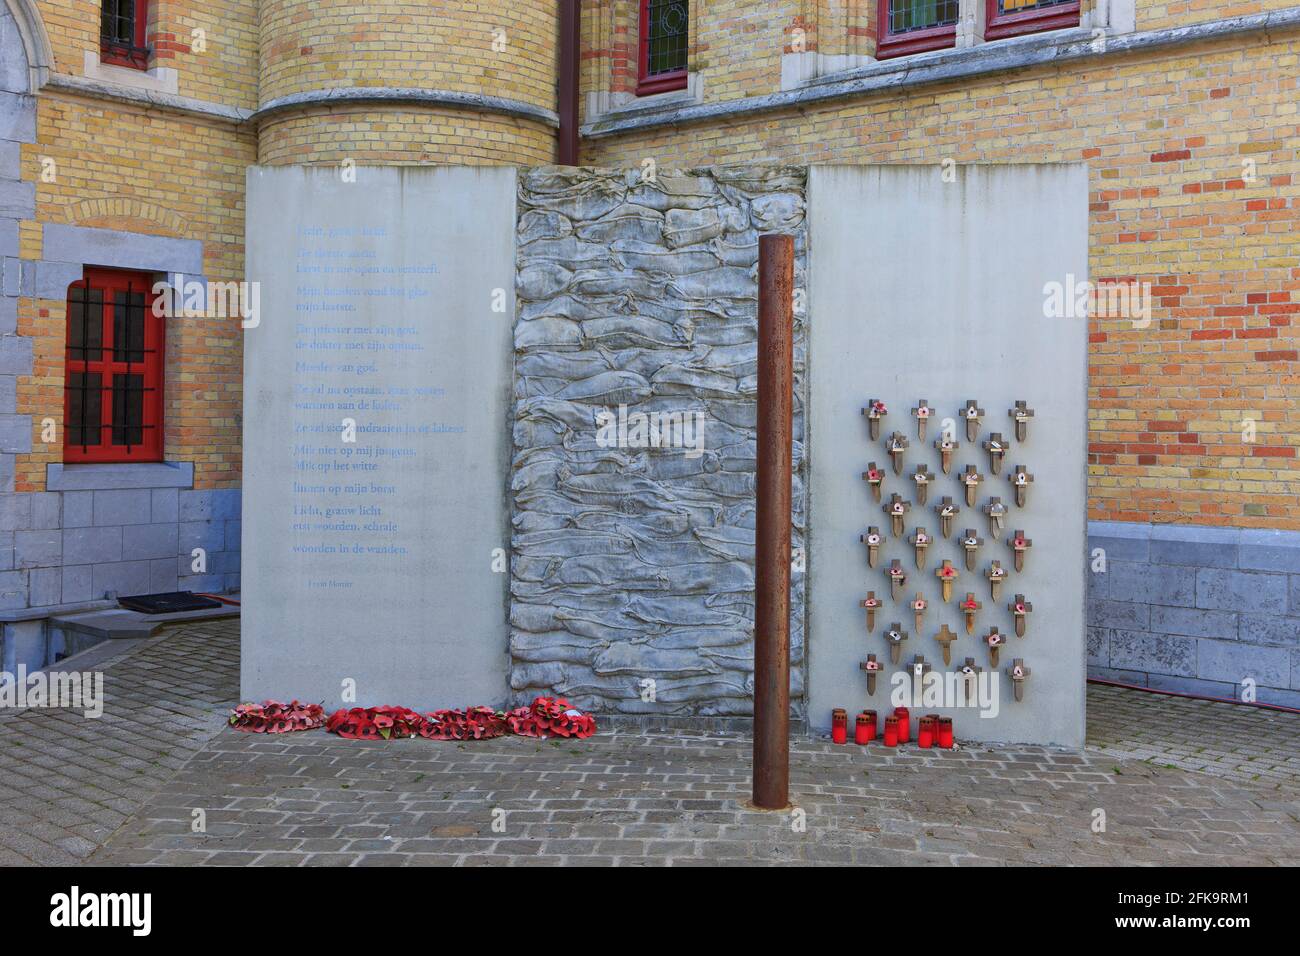 Der Hinrichtungsort auf dem Innenhof des Rathauses von Poperinge, Belgien, wo während des Ersten Weltkriegs Soldaten hingerichtet wurden Stockfoto